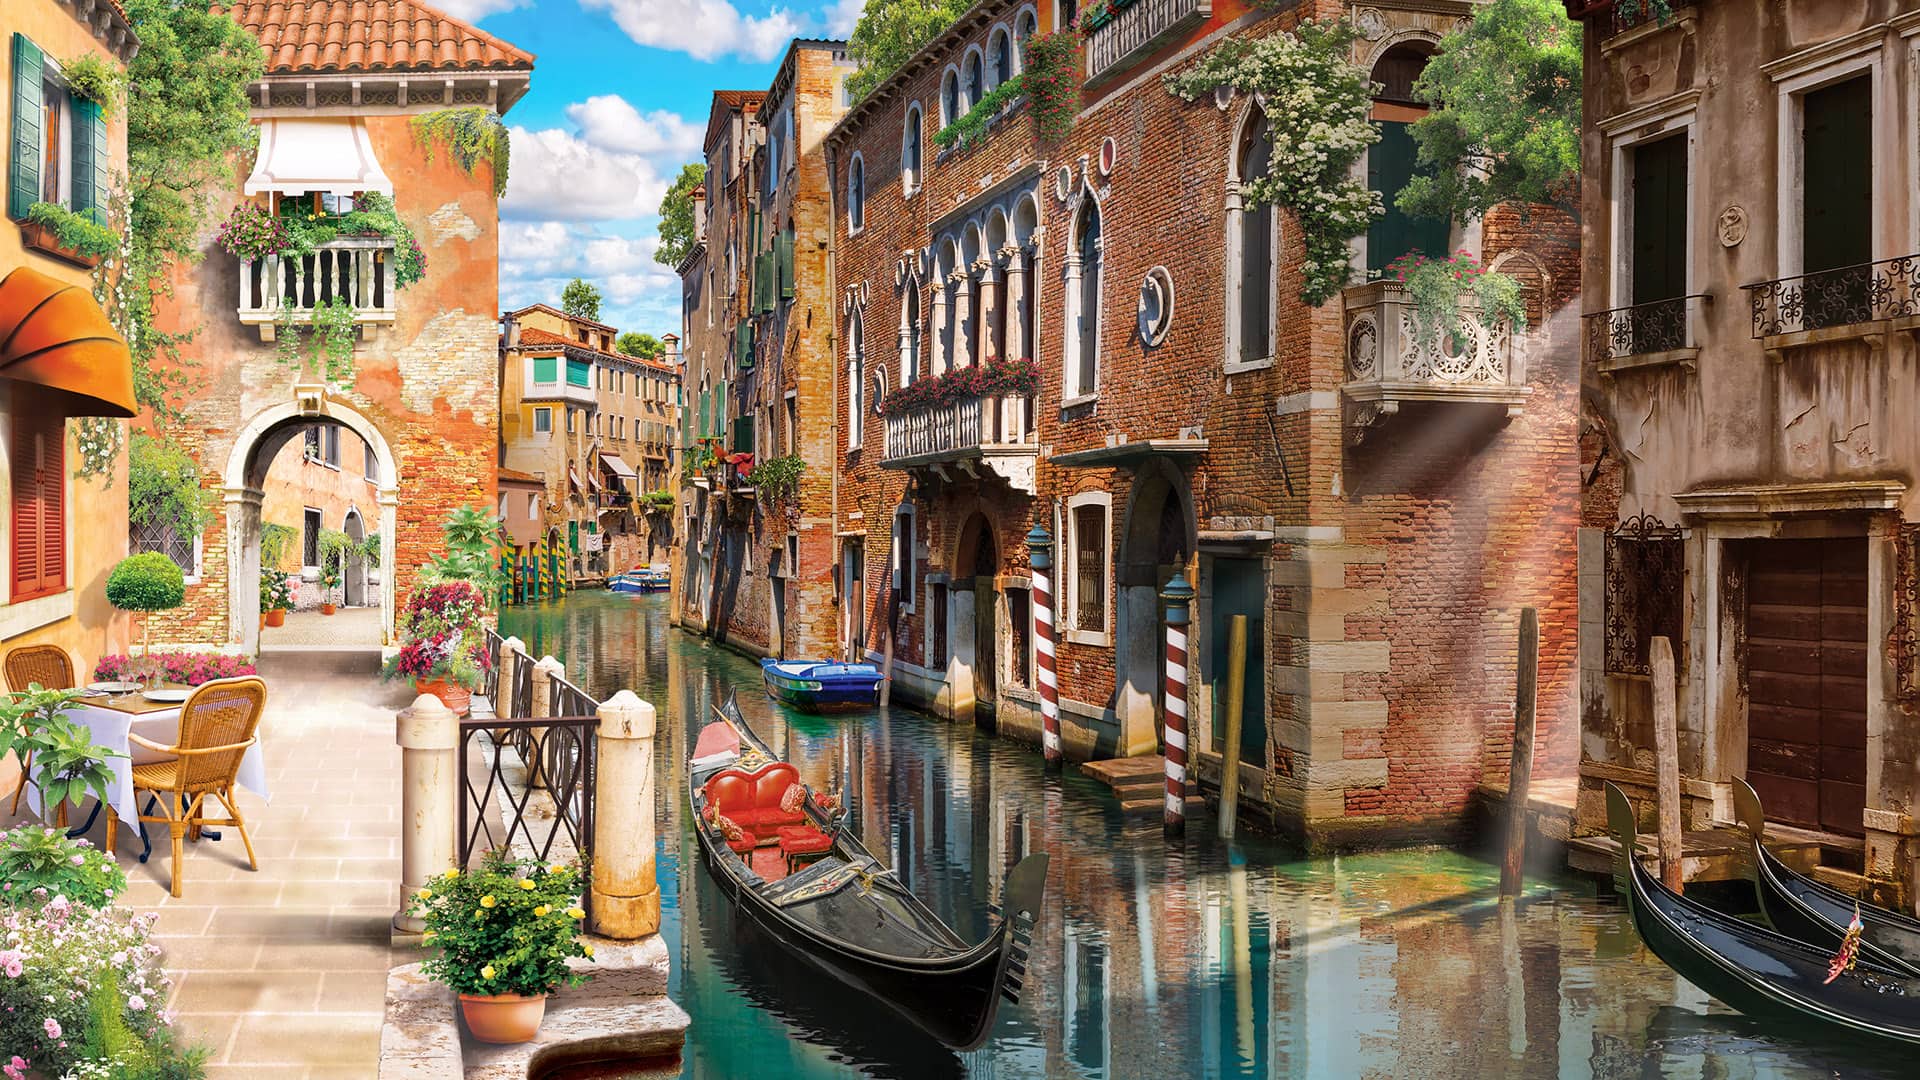 Mê du lịch và muốn trải nghiệm cảm giác học tập tại một thành phố venice lãng mạn? Nhấp vào hình ảnh và cùng khám phá hành trình du học sinh JCU tại Venice với những trải nghiệm không thể nào quên.